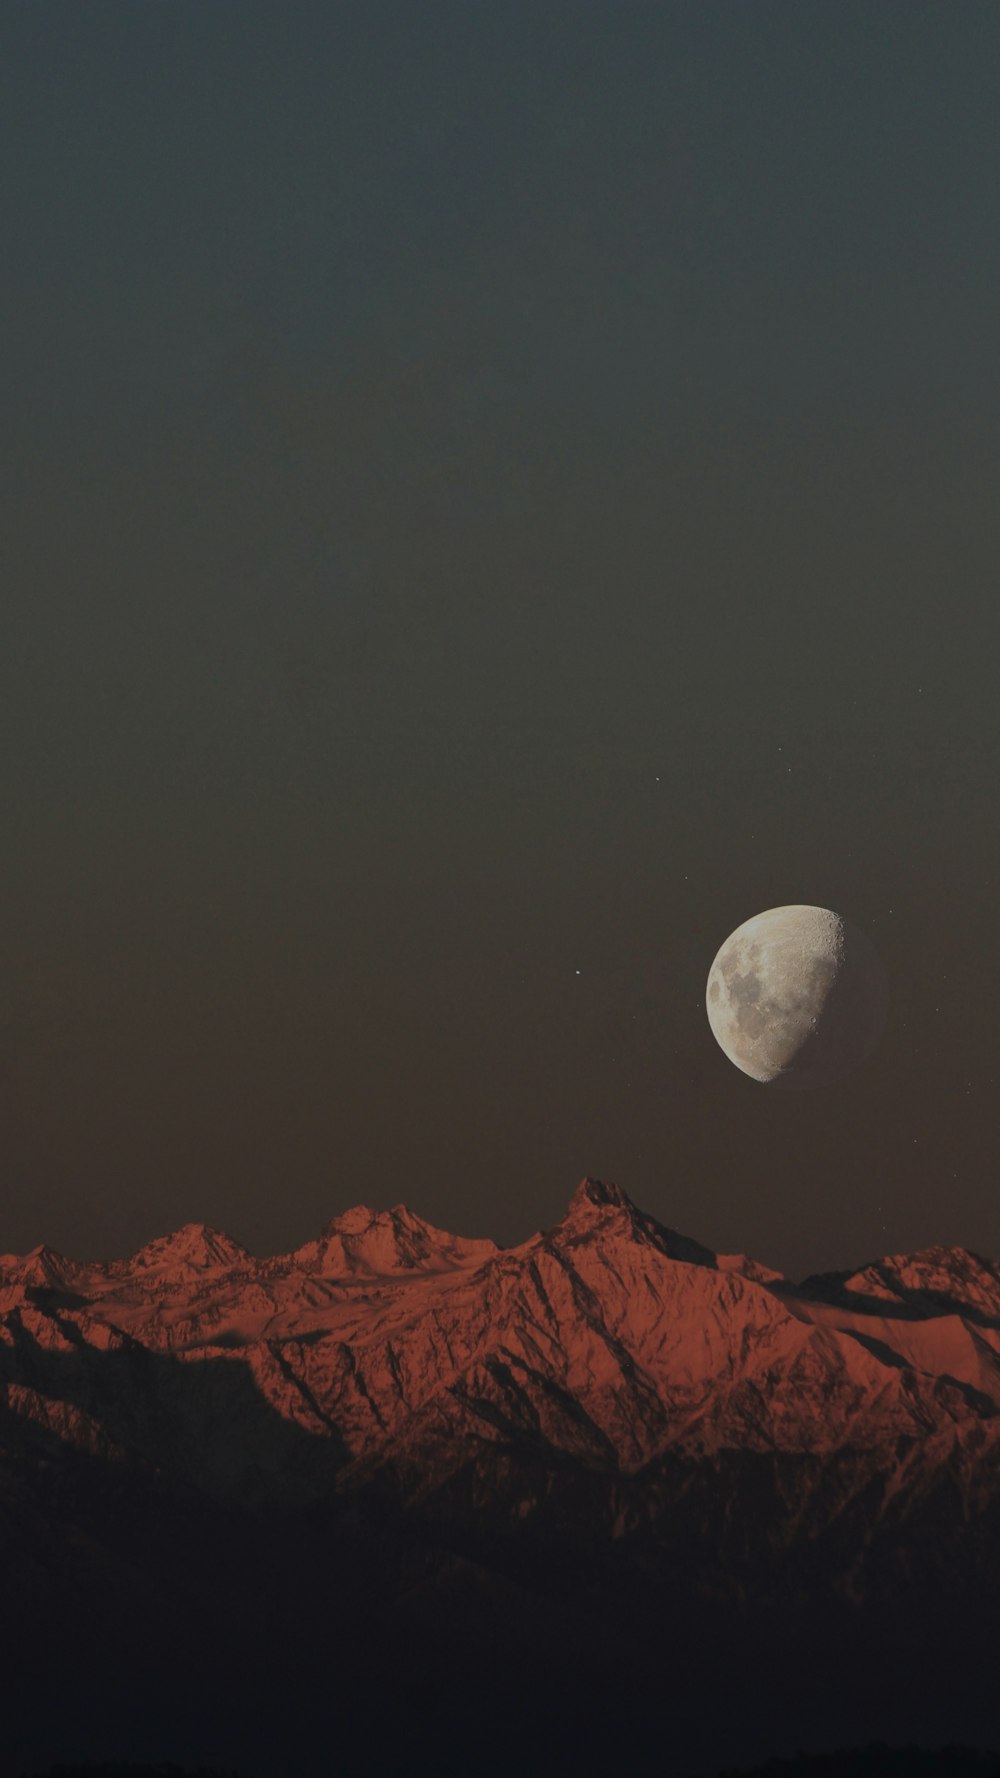 Montaña cubierta de nieve bajo la luna llena